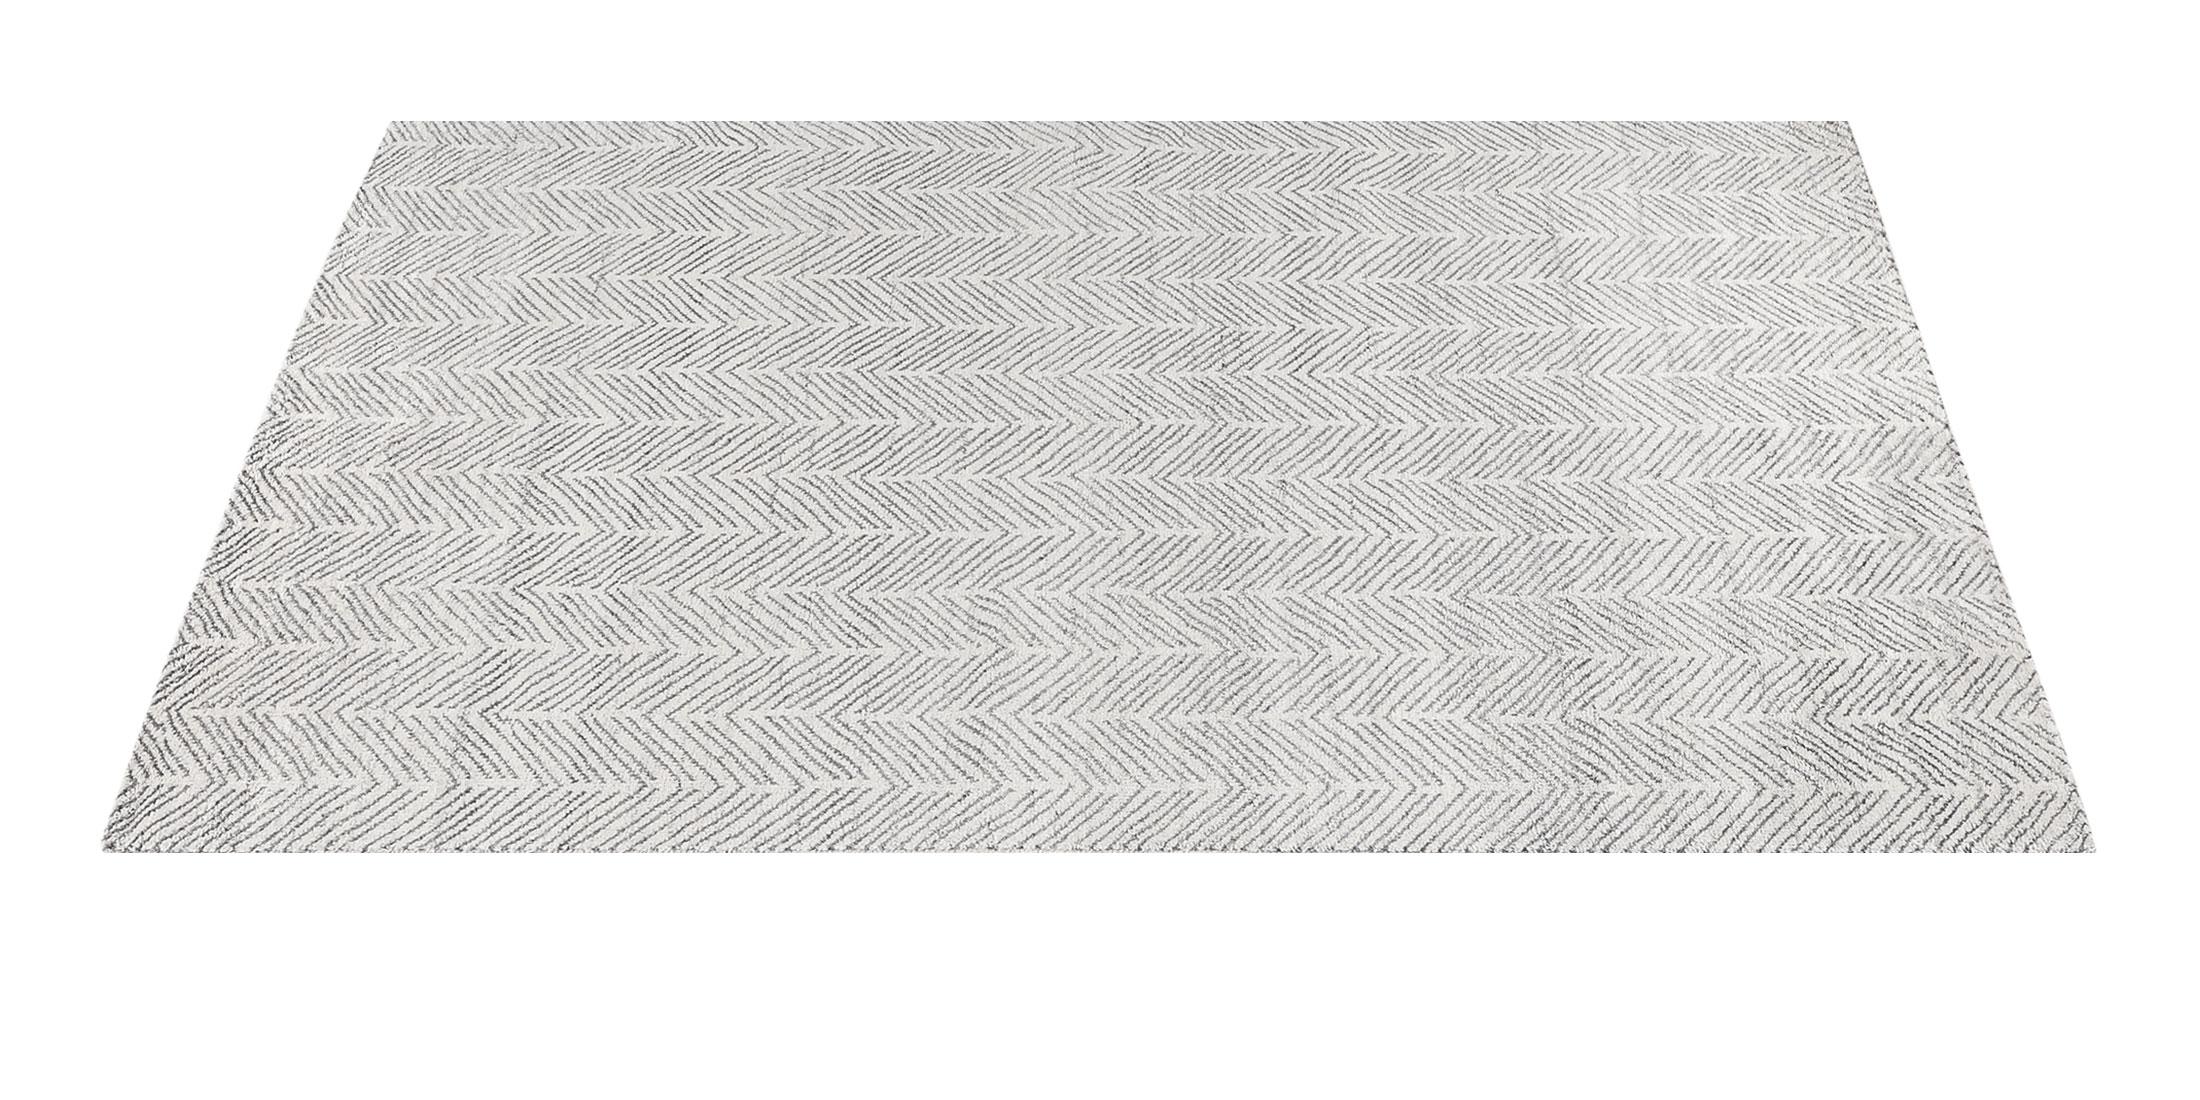 For Sale: White (White/Silver) Ben Soleimani Alia Rug– Hand-woven Chevron Wool + Viscose Black/Gray 9'x12' 2